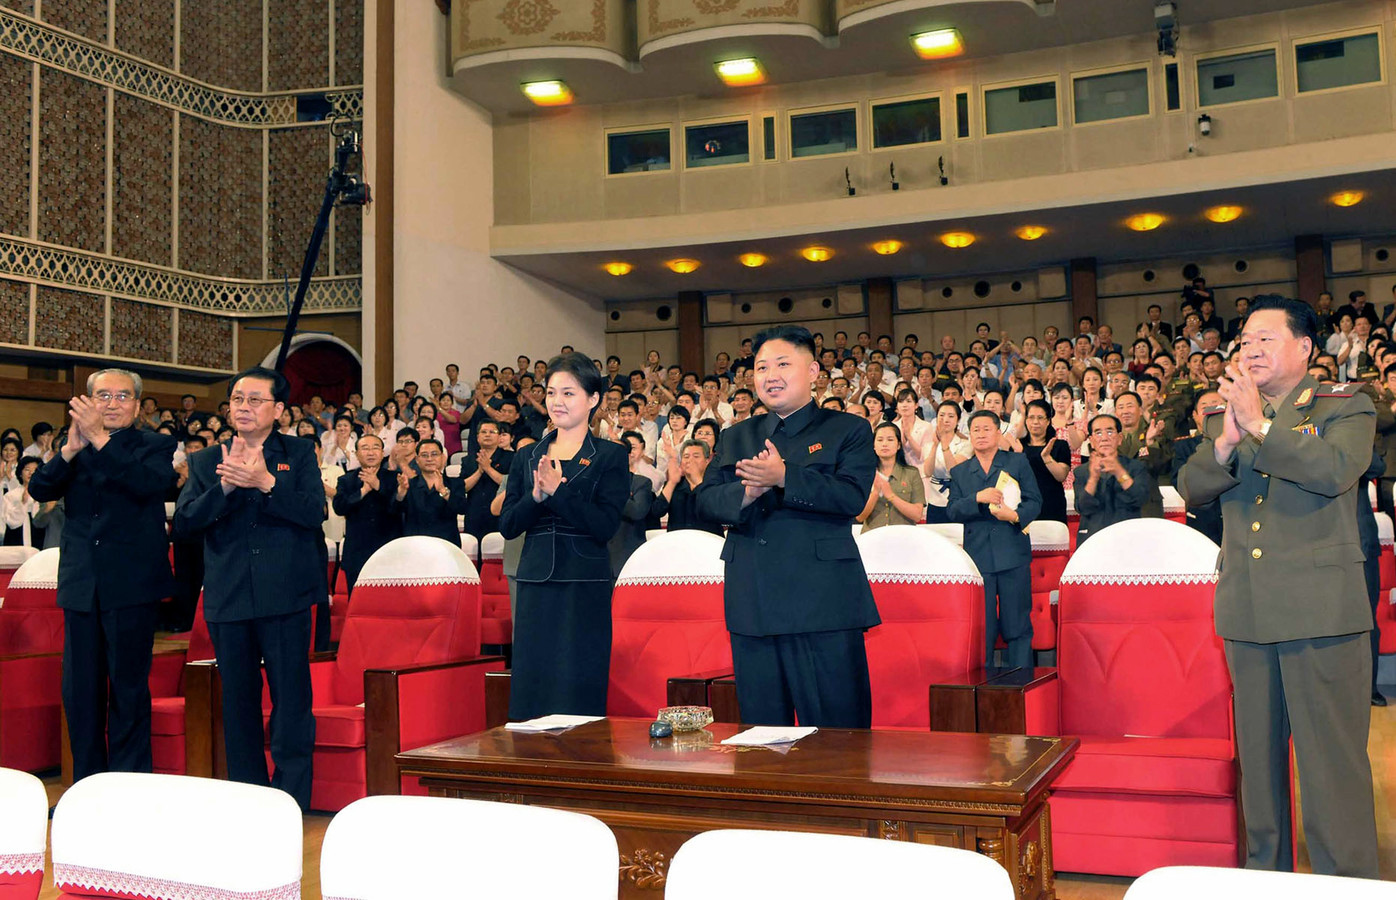 Kim Jong-un klapt voor de show naast een onbekende vrouw: zijn zus of zijn vriendin?